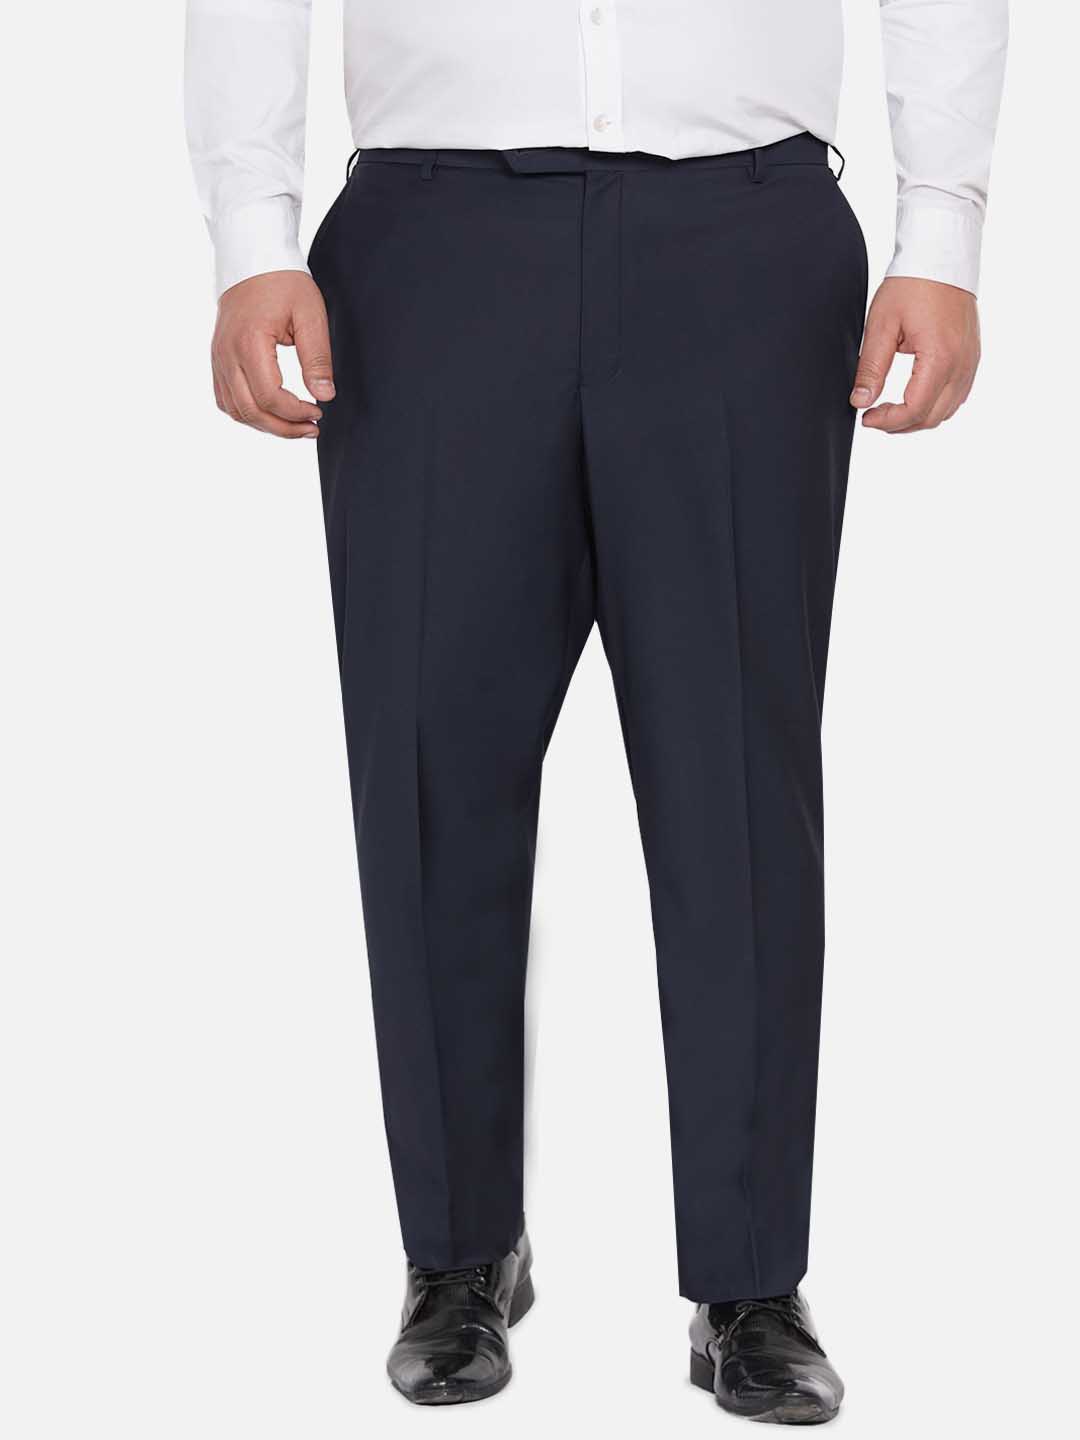 bottomwear/trousers/JPTR22010F/jptr22010f-1.jpg